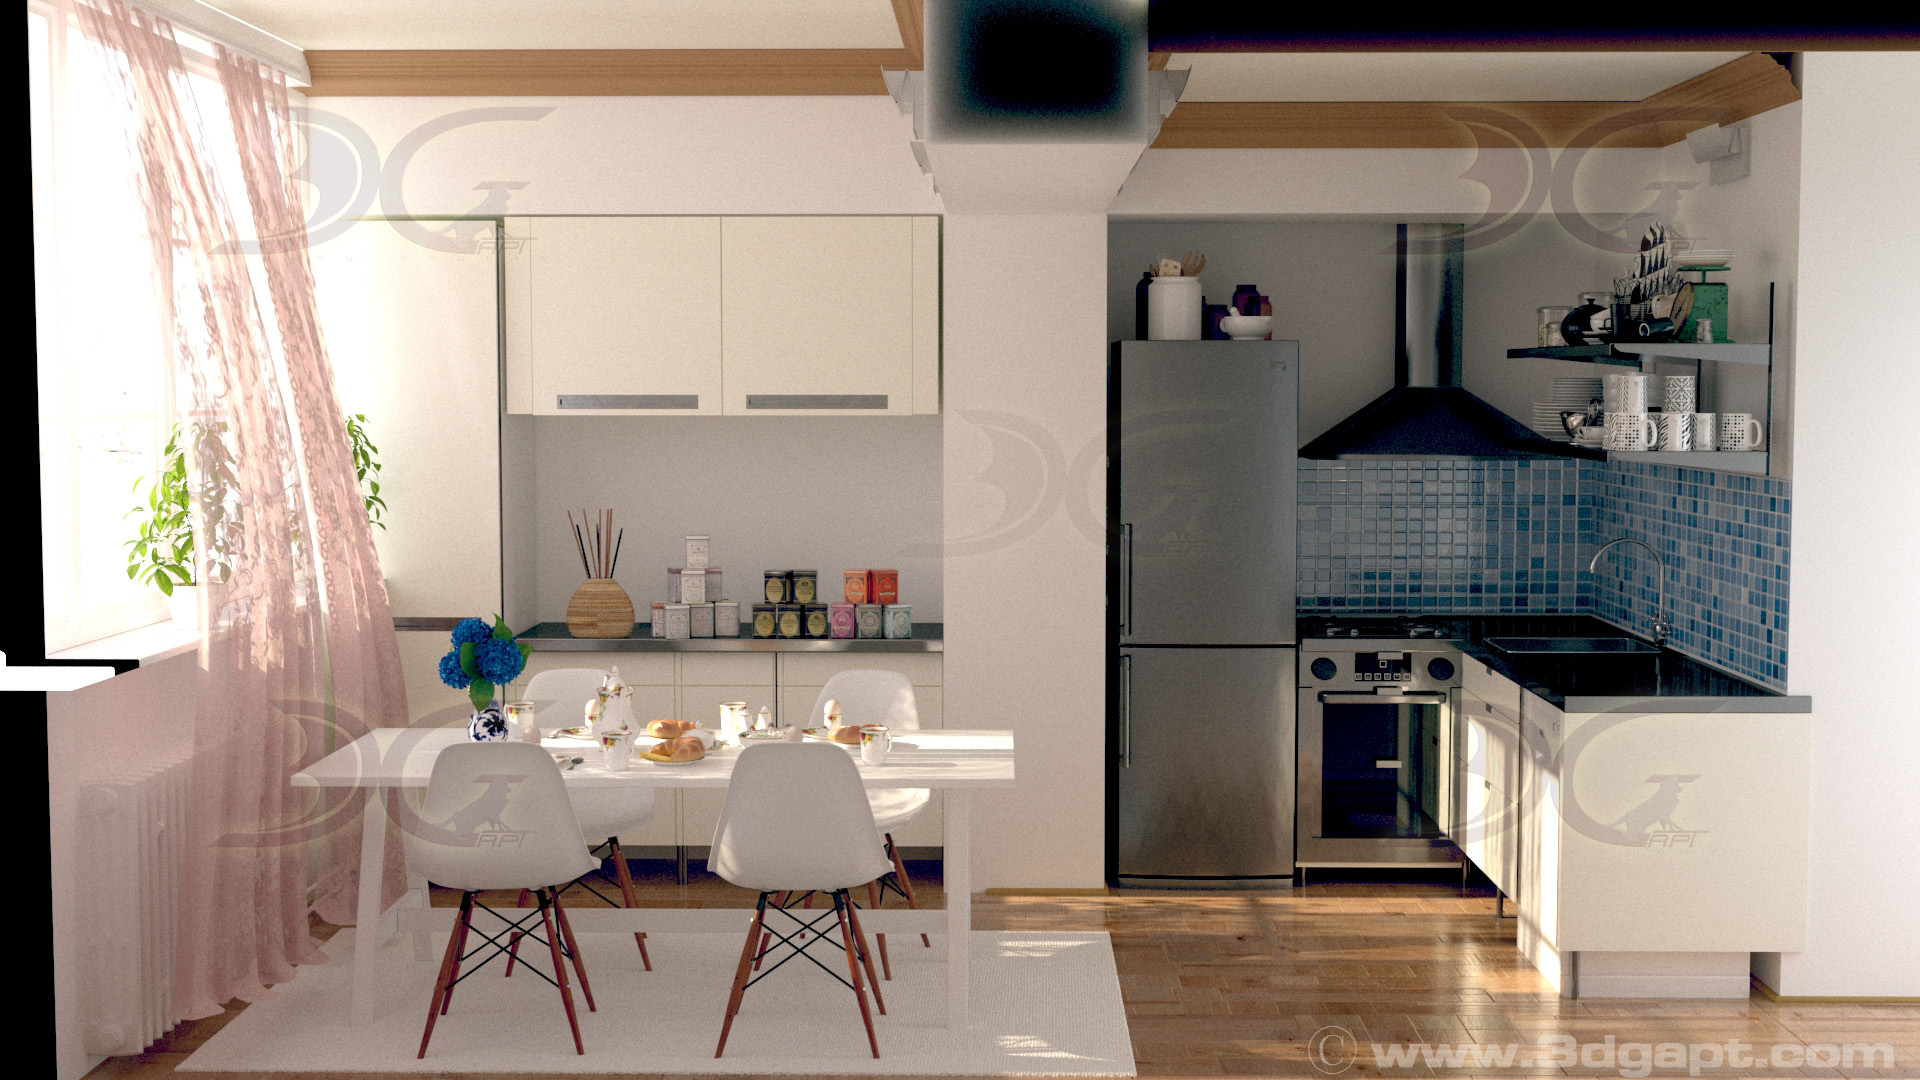 architecture interior kitchen-2versions 008